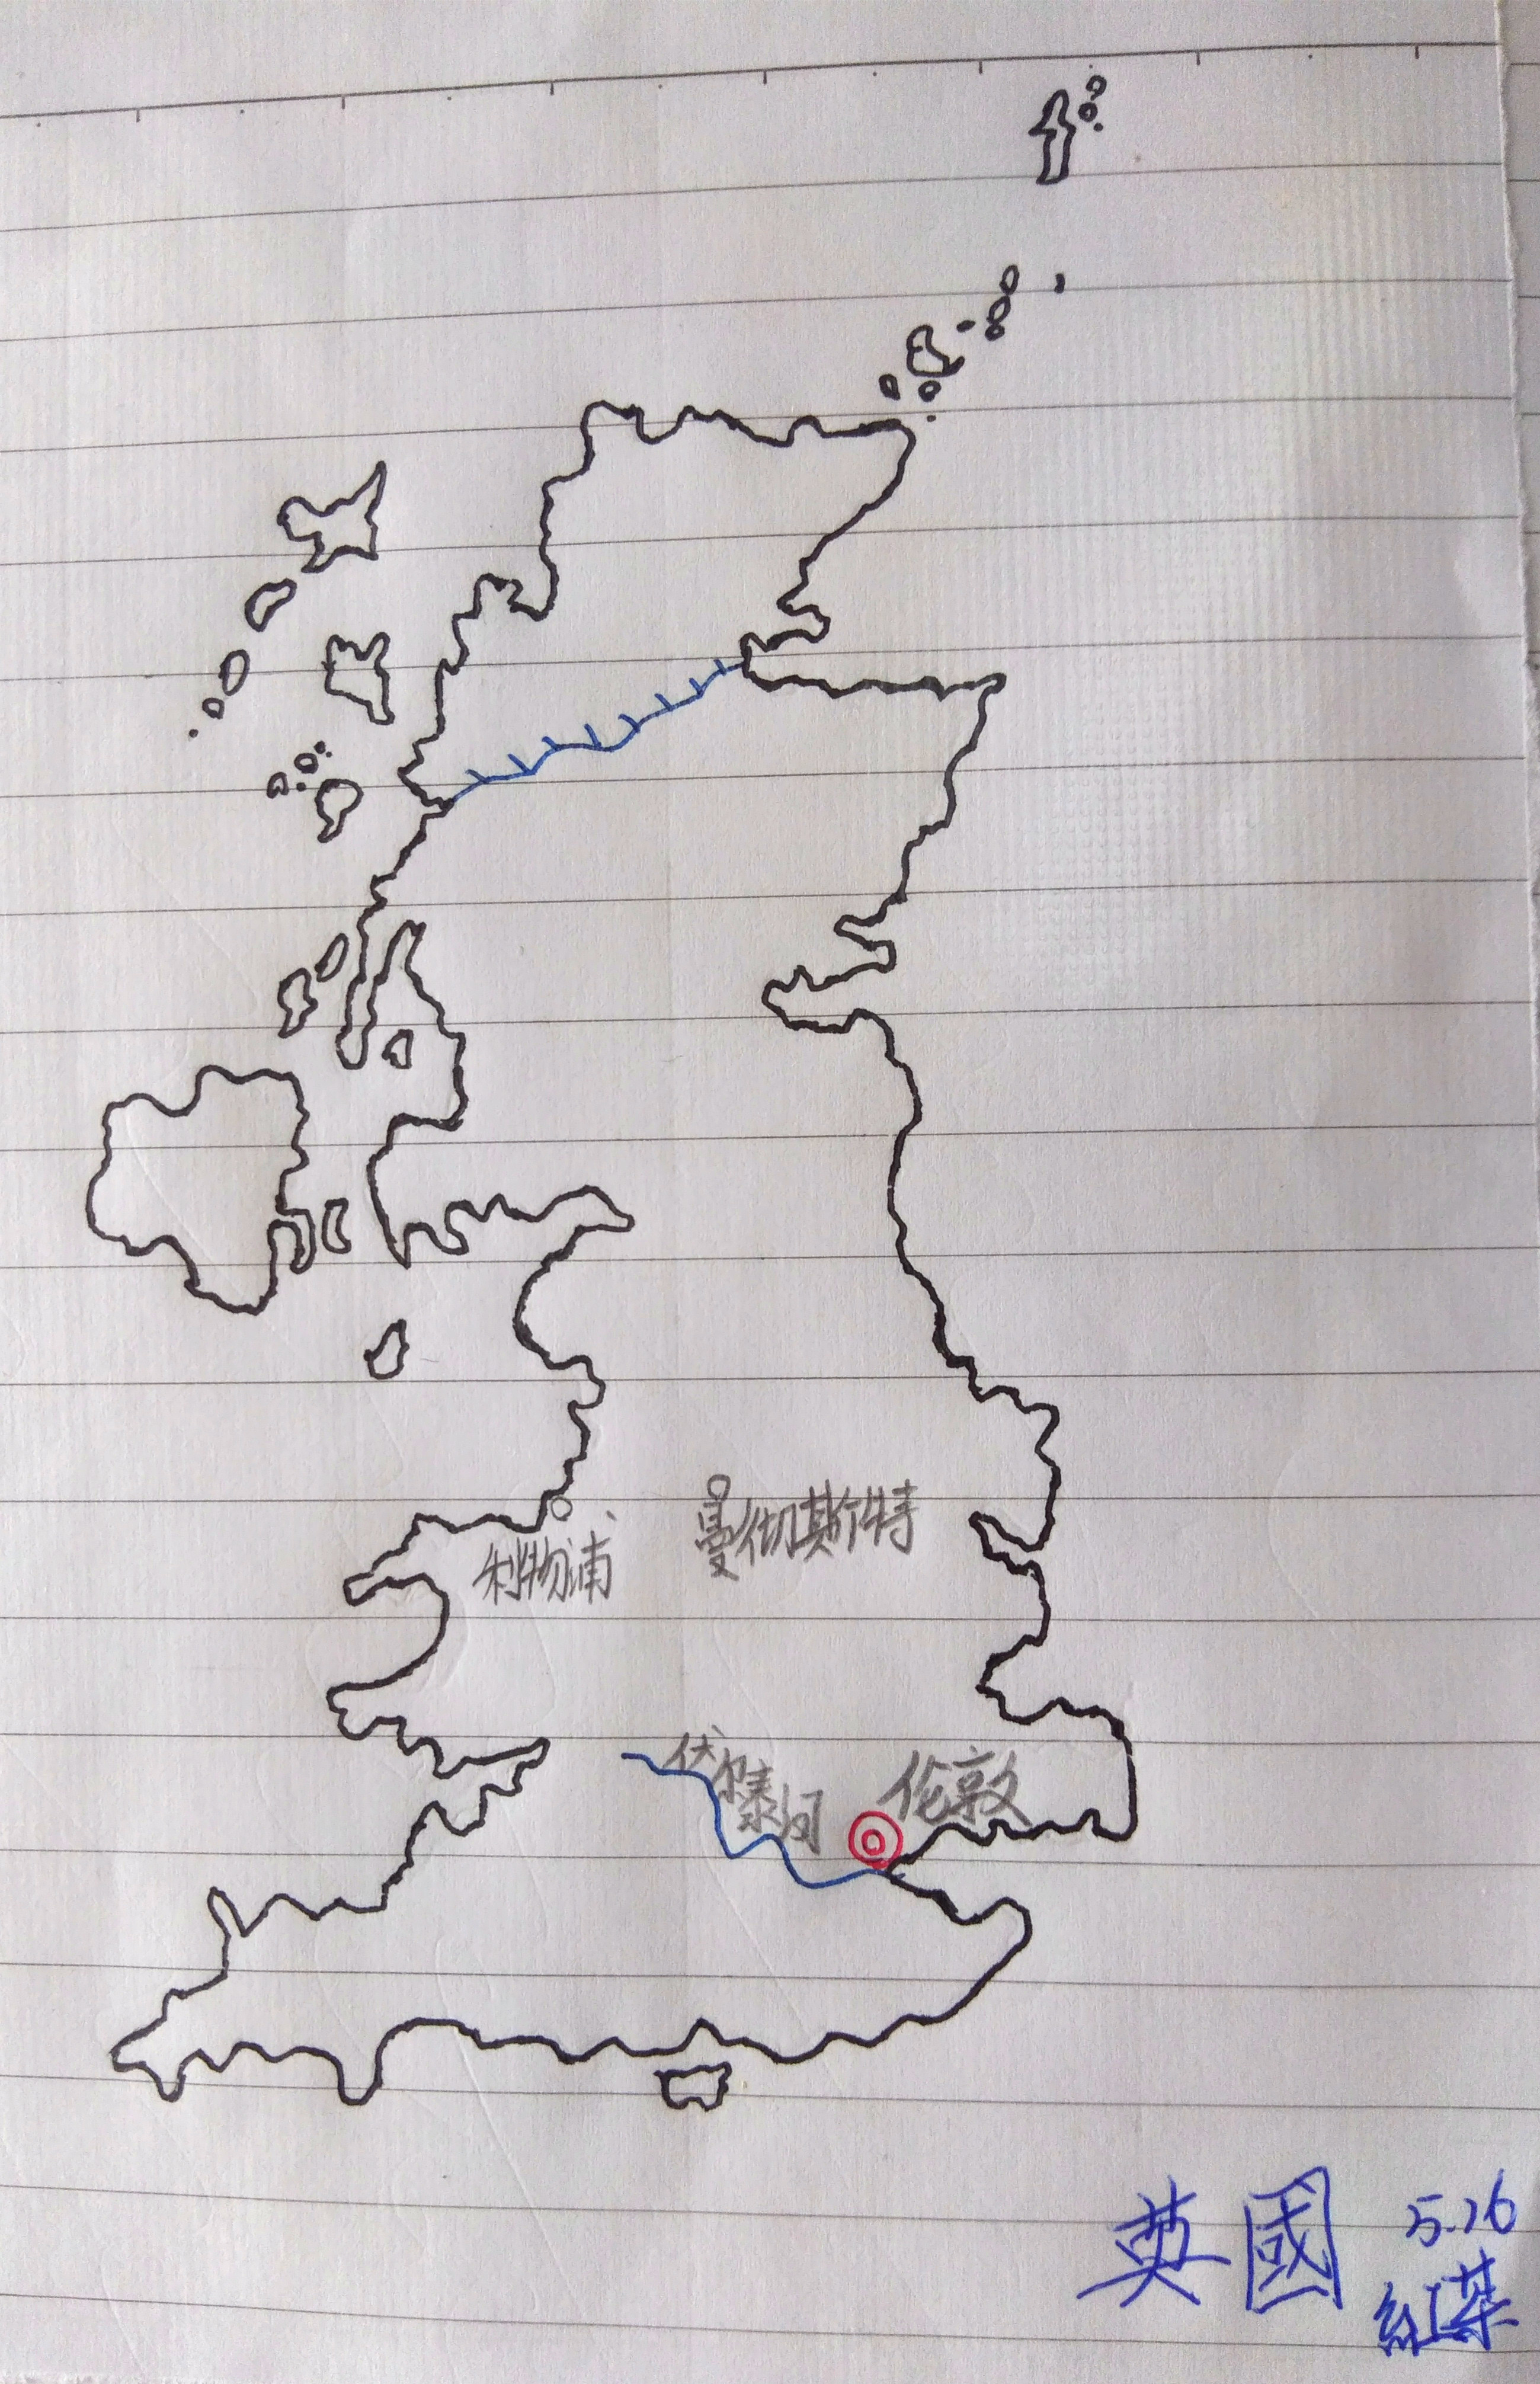 随手画了一张英国地图(滑稽)?